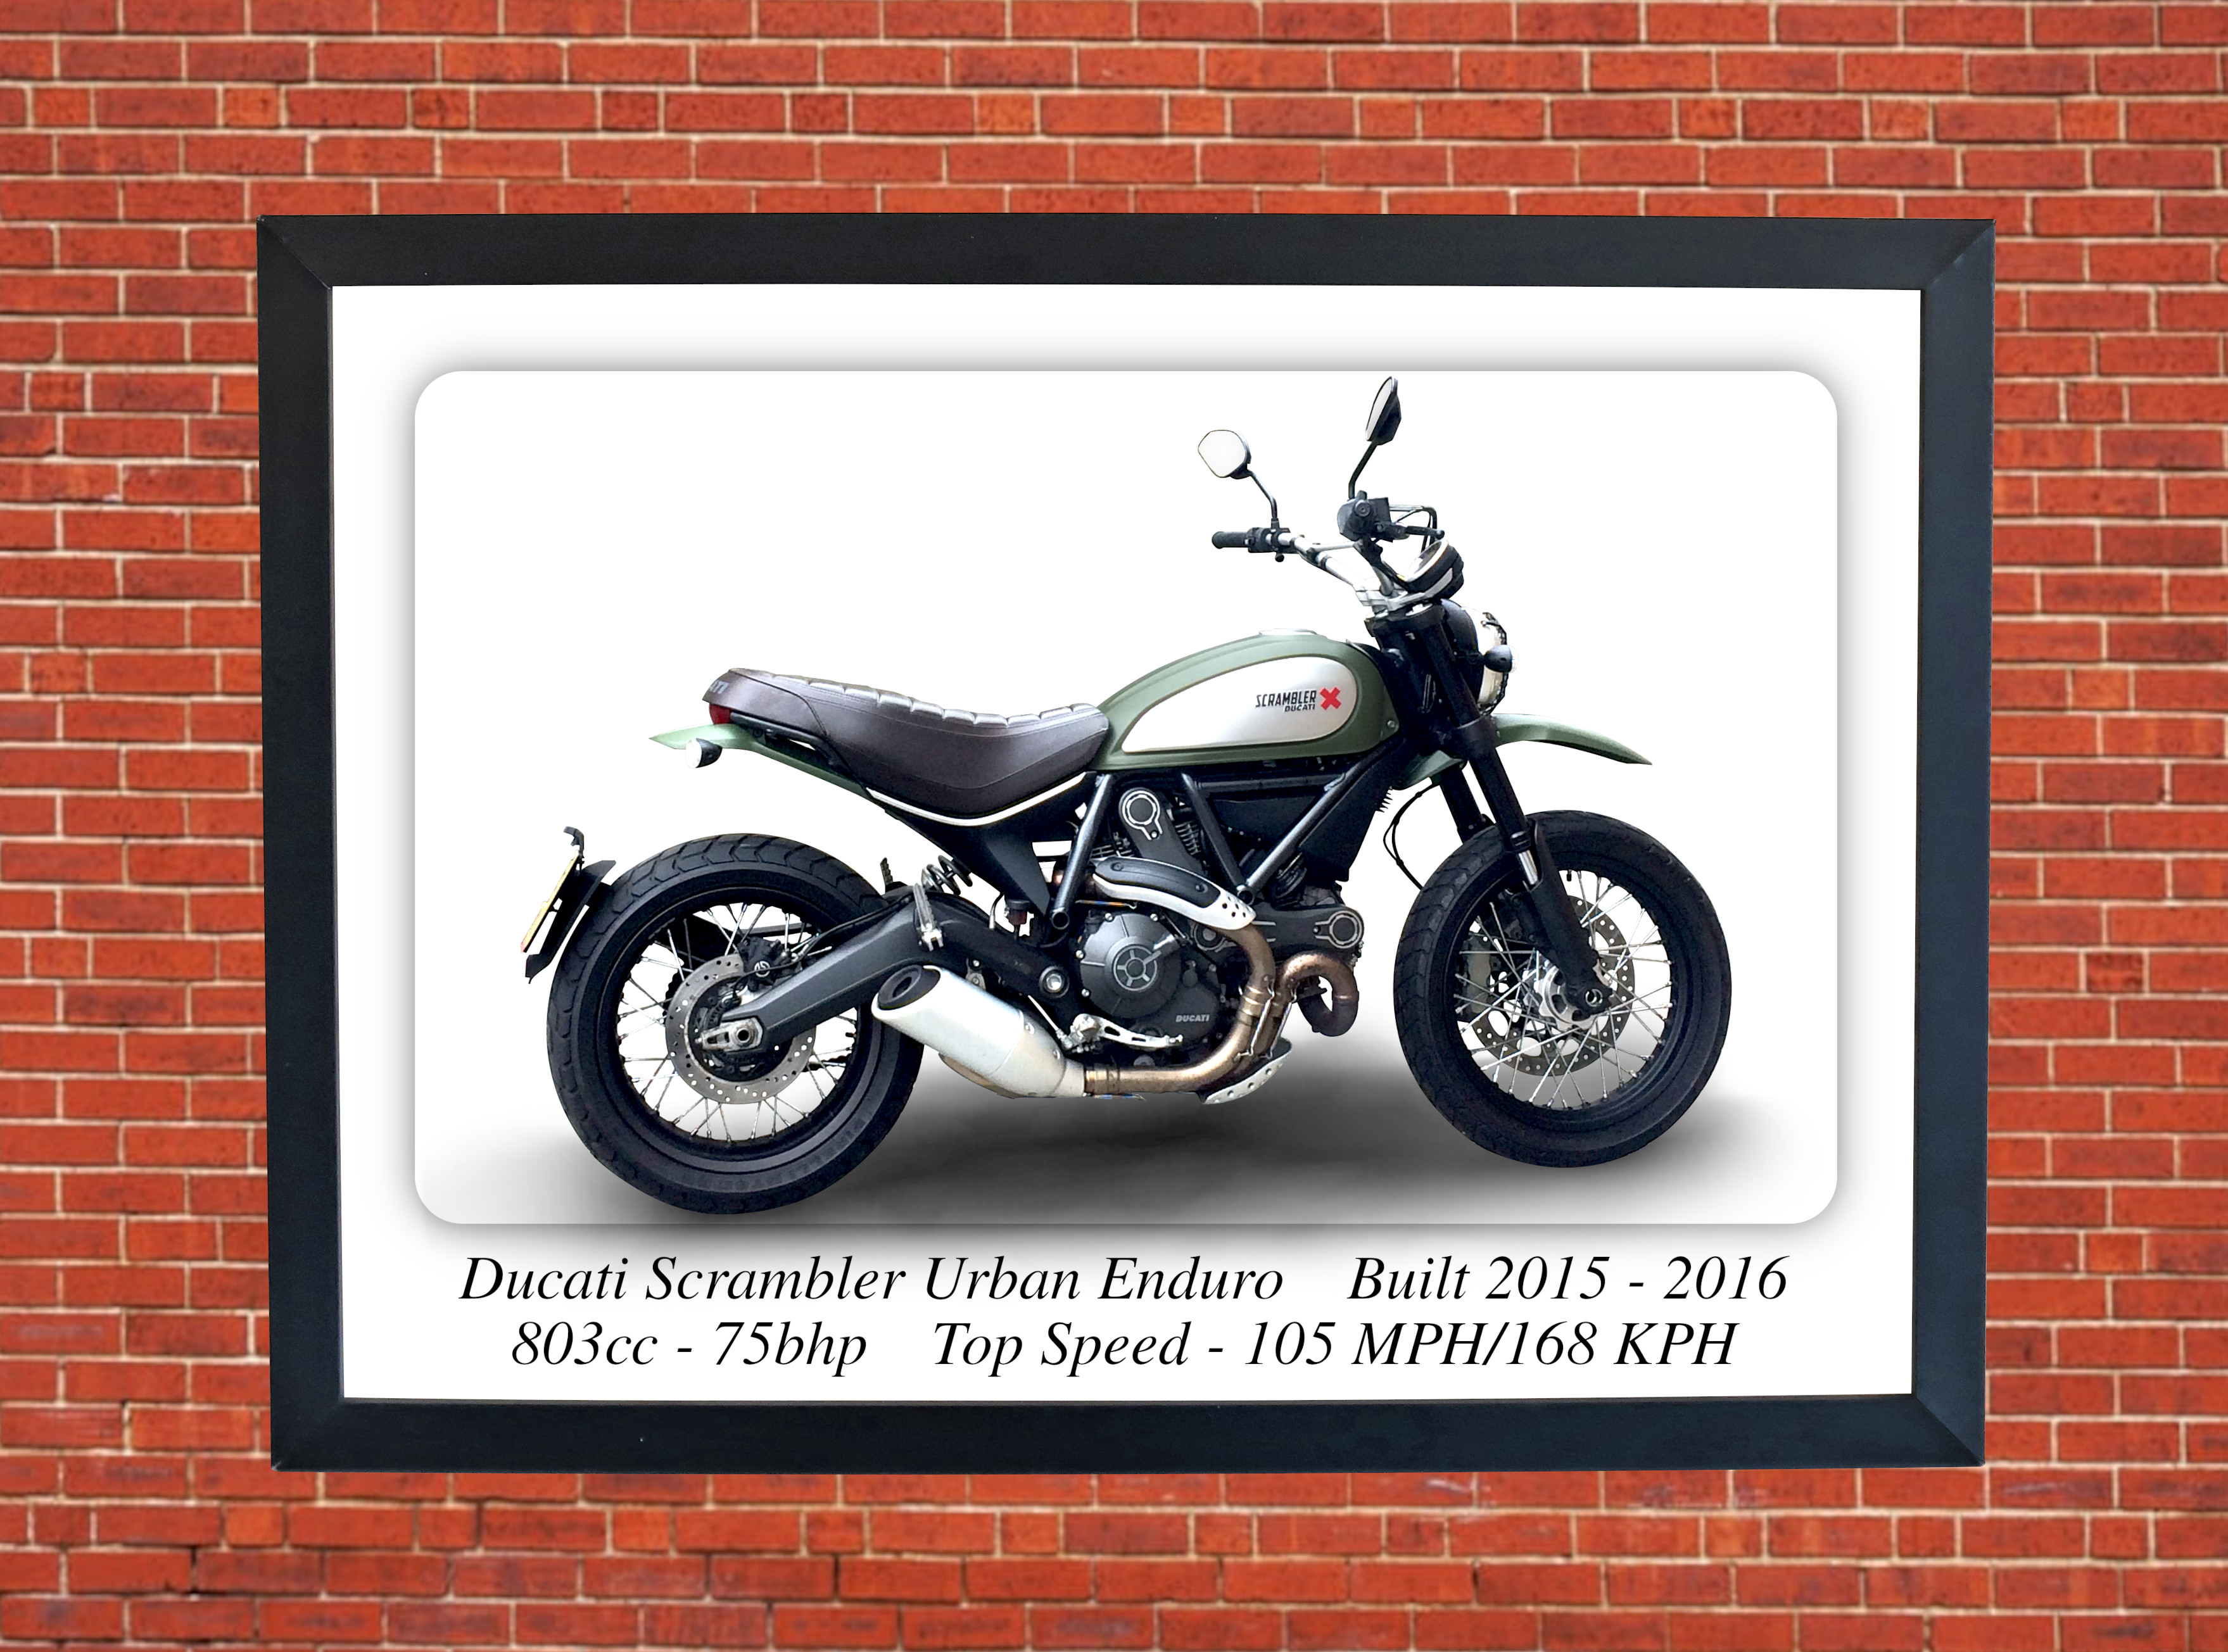 Ducati Scrambler Urban Enduro Motorcycle - A3/A4 Size Print Poster